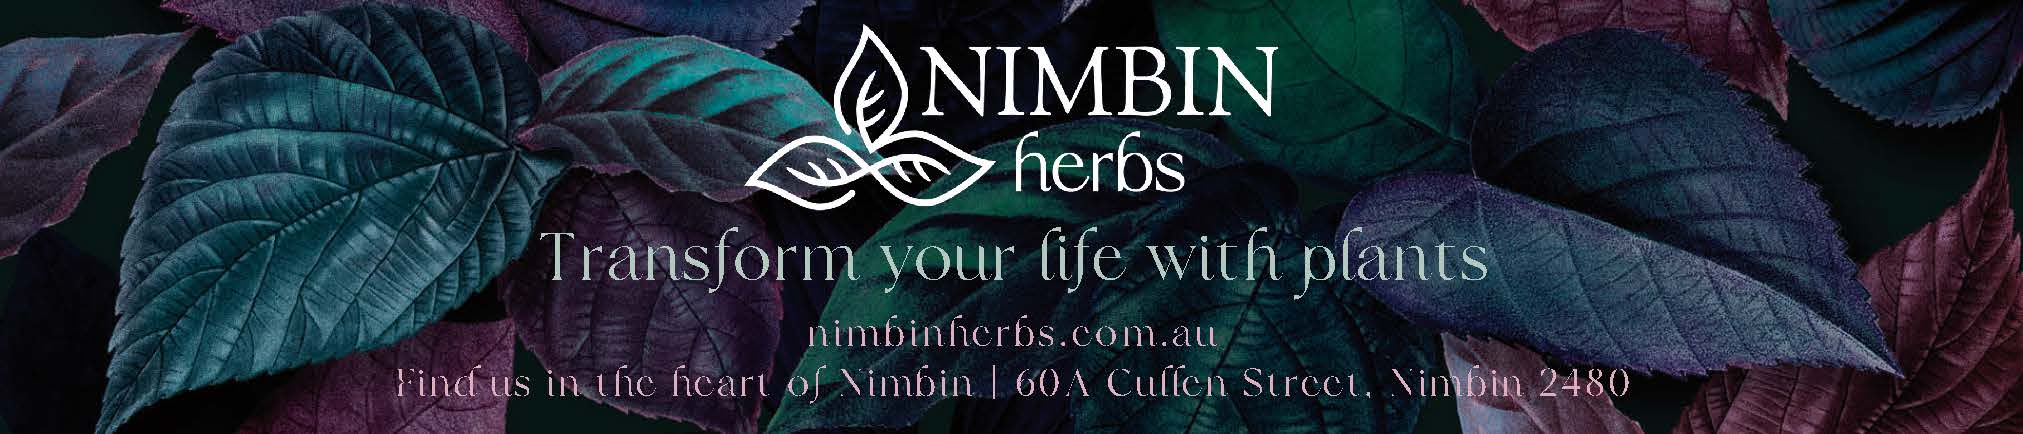 Nimbin Herbs